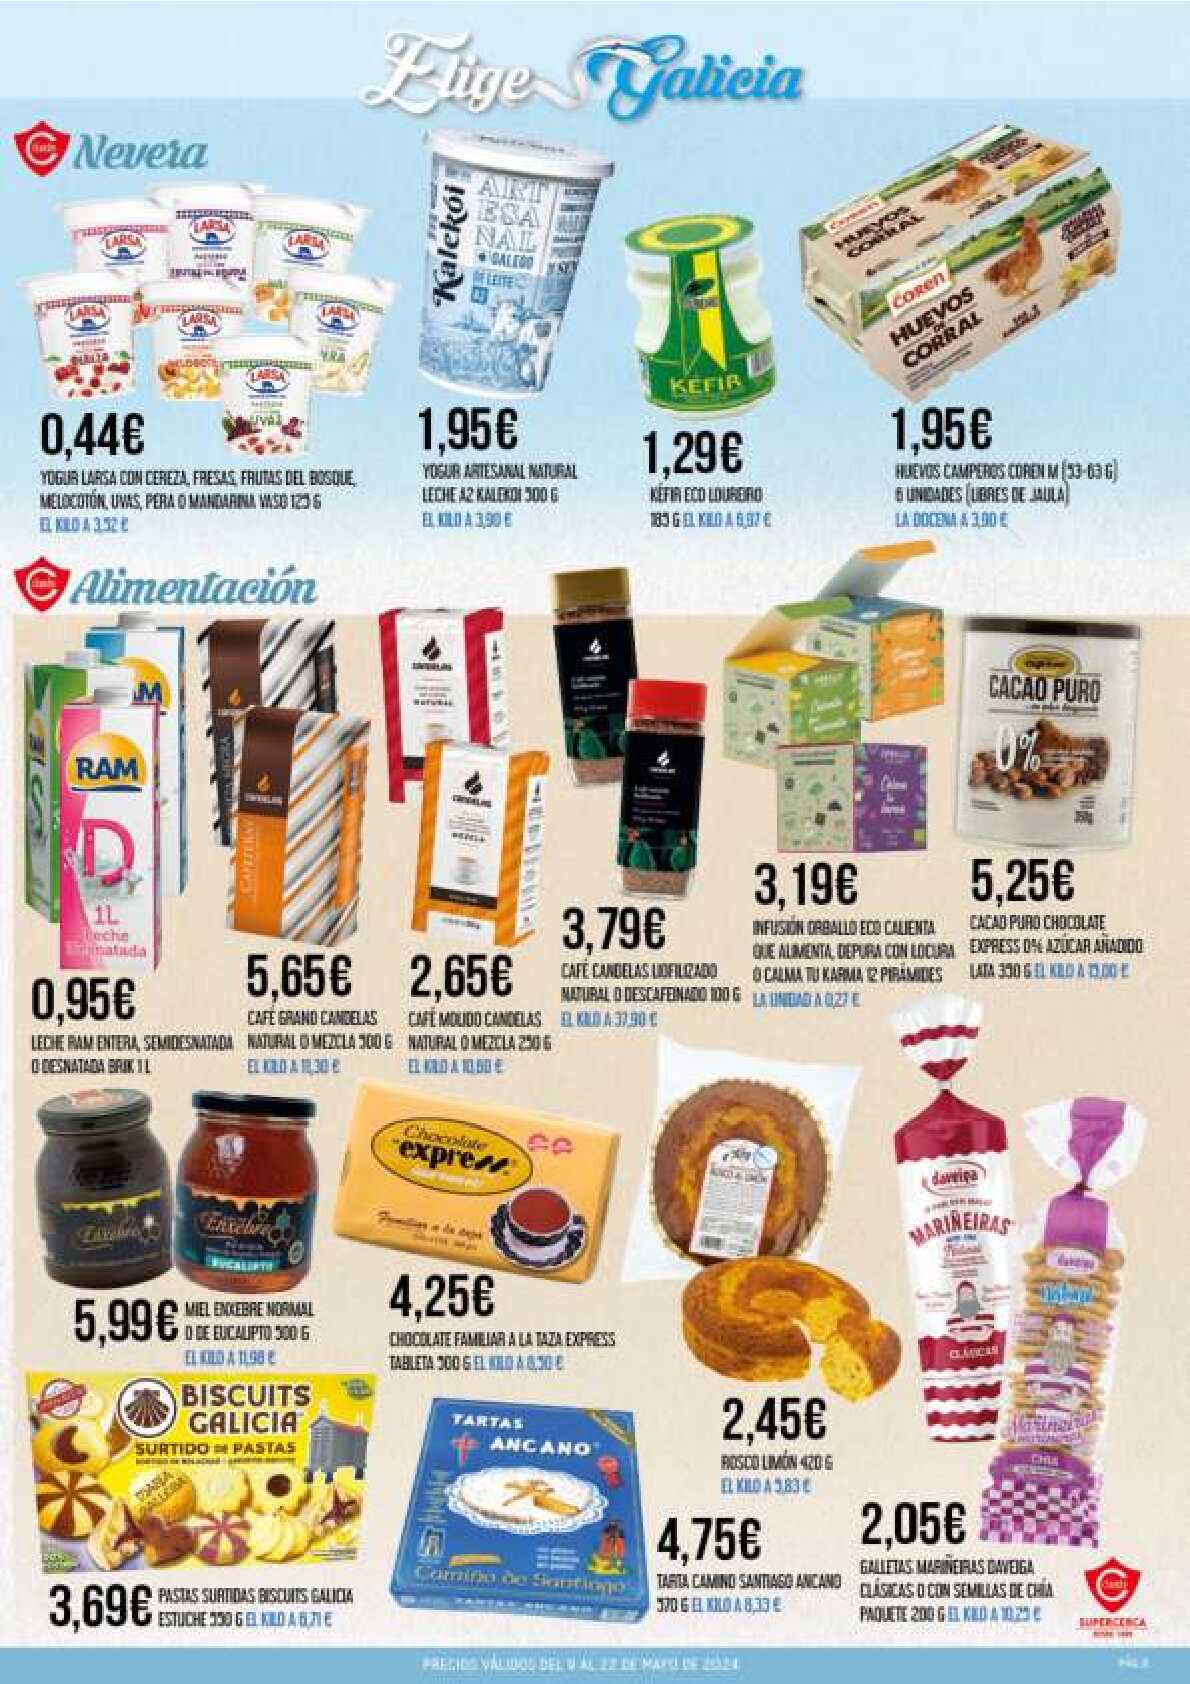 Ofertas quincenales Supermercado Claudio. Página 03